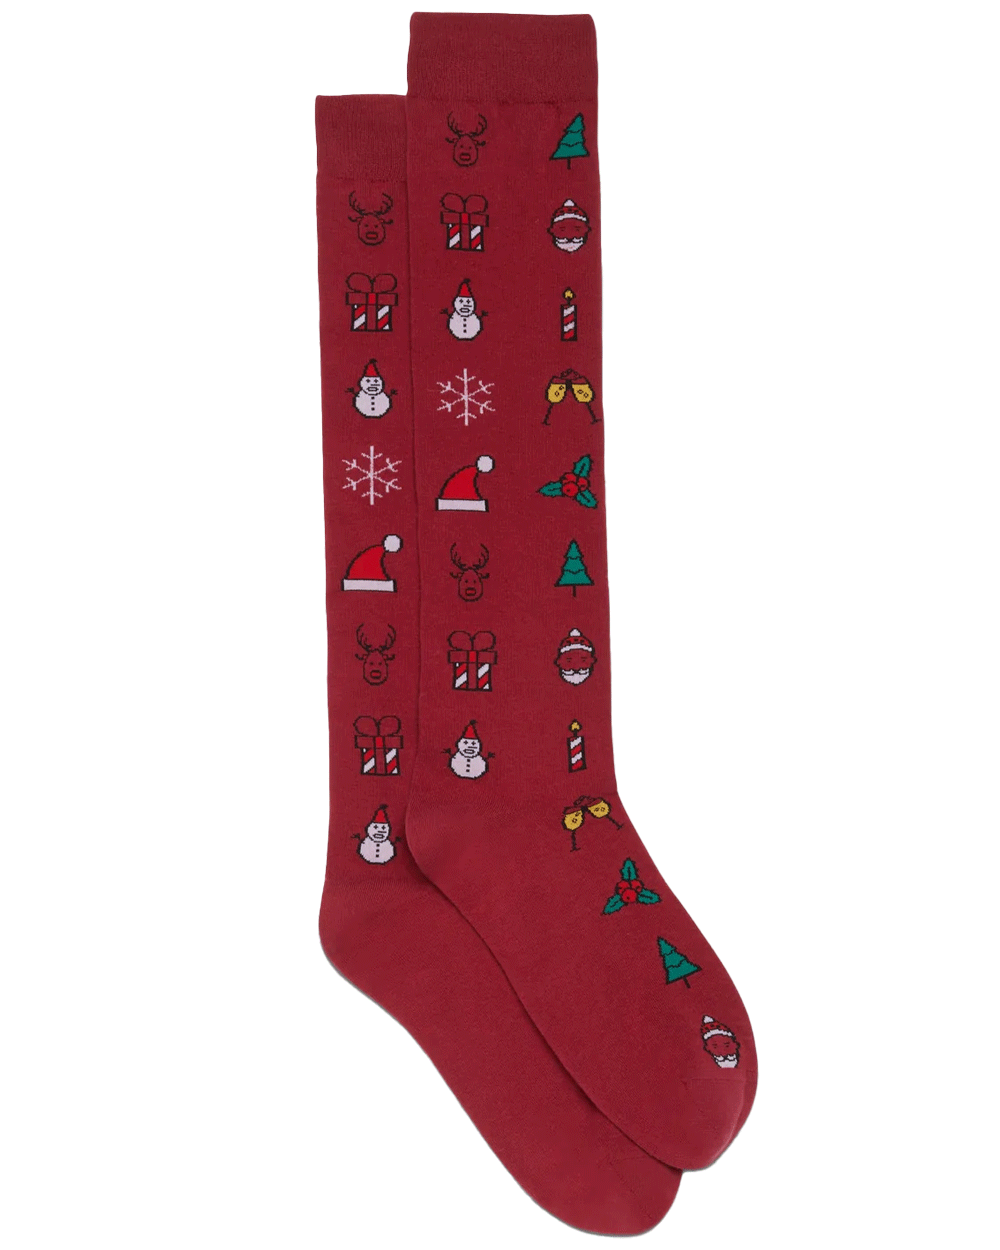 Santa Christmas Socks in Red